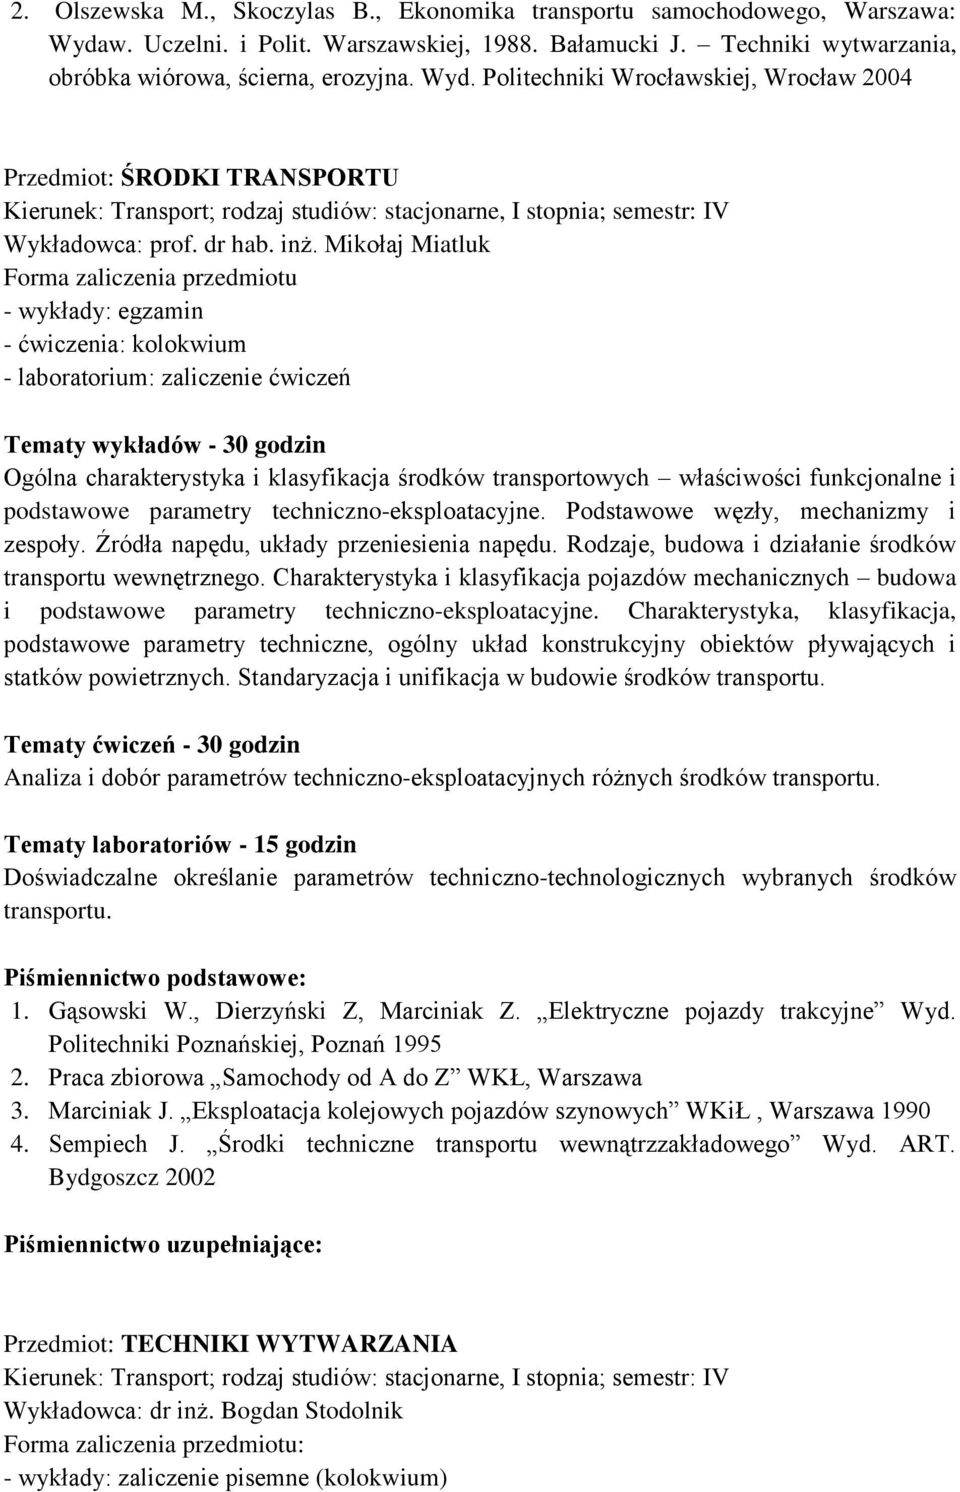 Mikołaj Miatluk - wykłady: egzamin - ćwiczenia: kolokwium - laboratorium: zaliczenie ćwiczeń Ogólna charakterystyka i klasyfikacja środków transportowych właściwości funkcjonalne i podstawowe